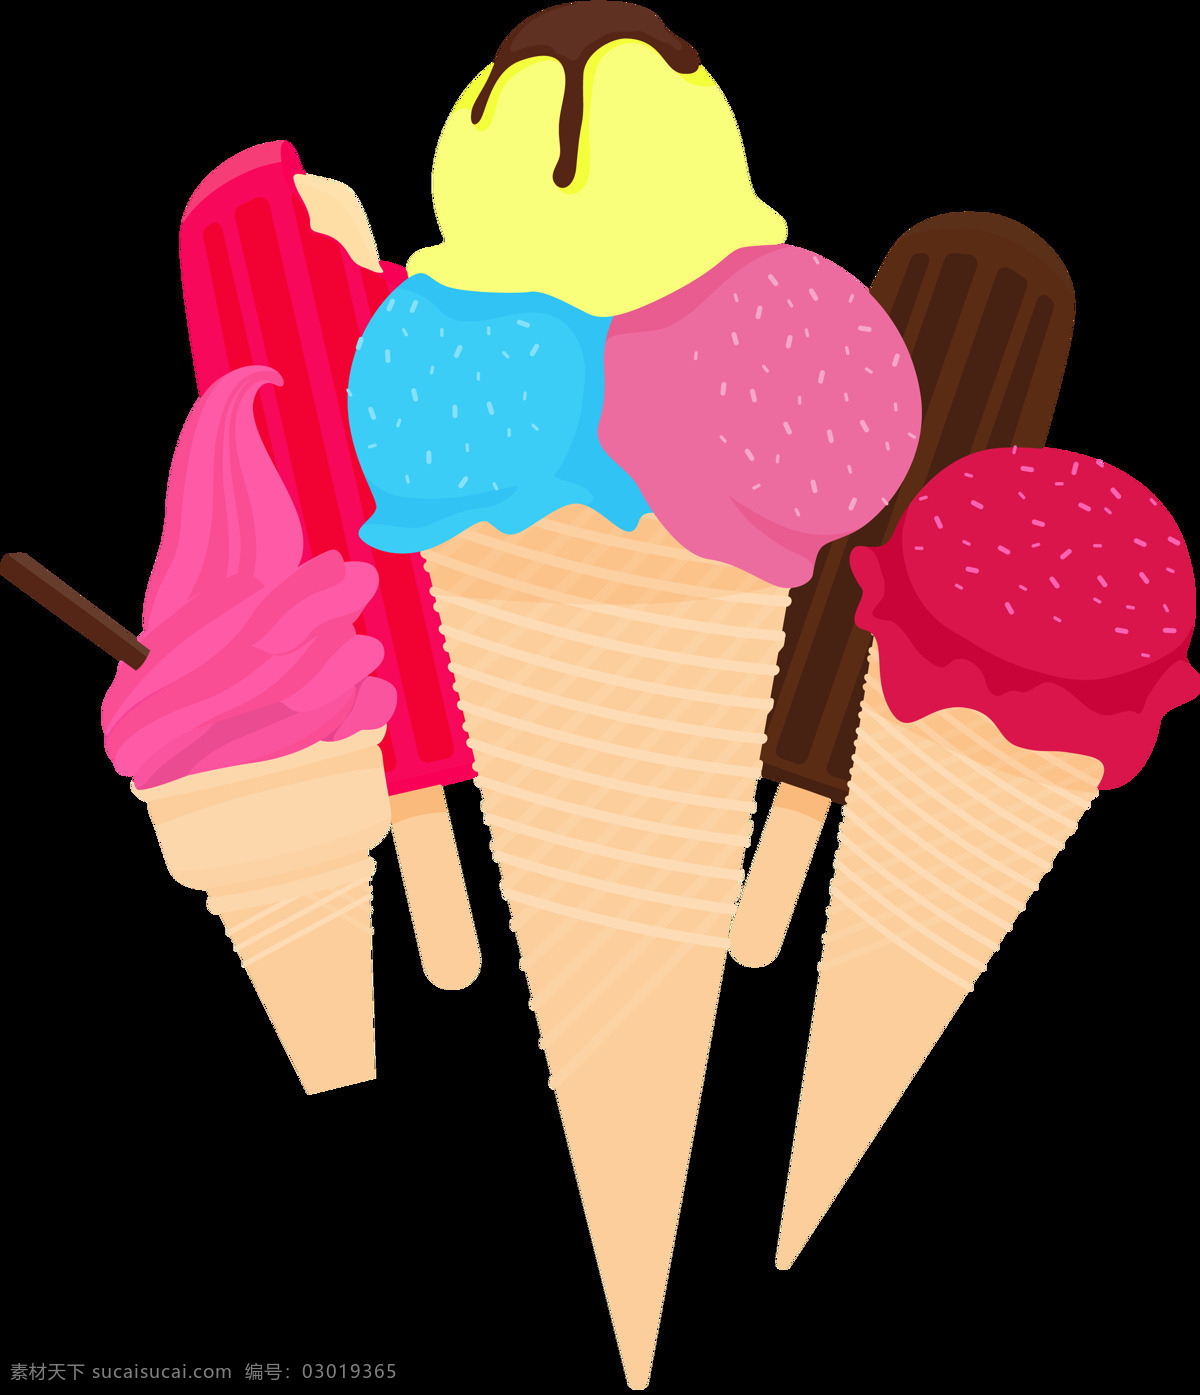 手绘 彩色 冰淇淋 雪糕 免 抠 透明 图 层 甜品图标 冷饮插图 清凉甜品 冰淇淋标志 雪糕图标 冰激凌图标 冰激凌插图 卡通冰淇淋 手绘冰淇淋 雪糕图案 冰淇淋促销 冰淇淋素材